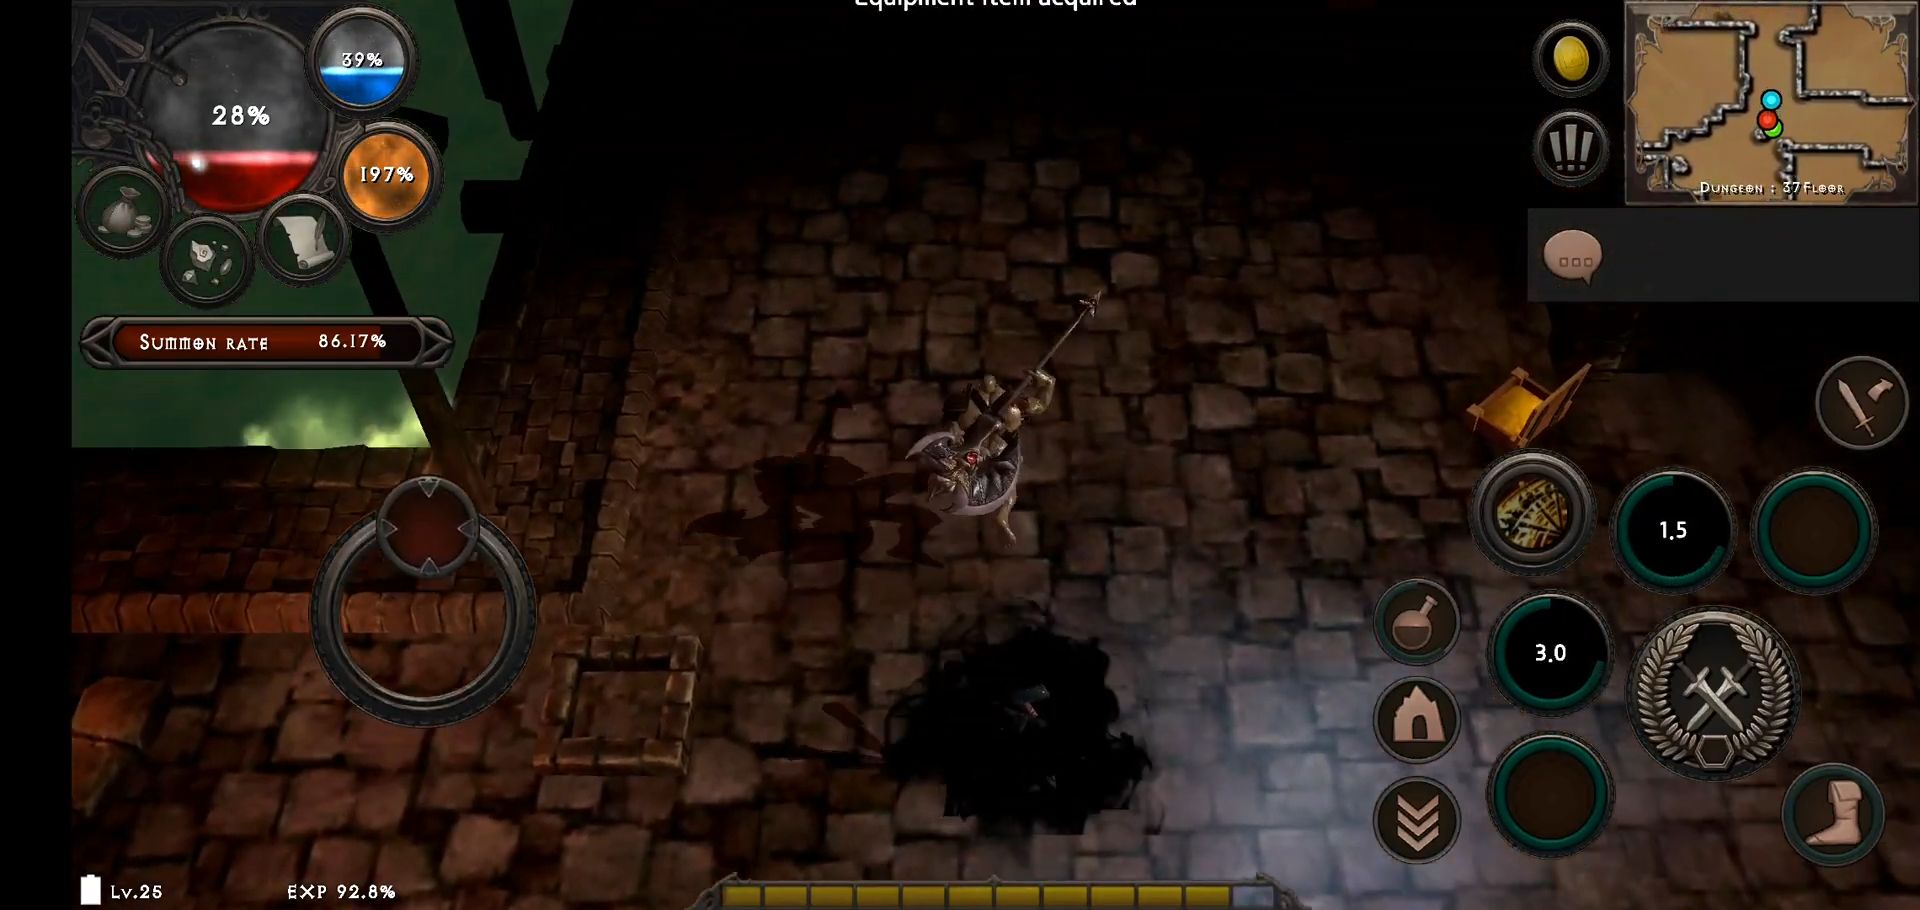 Dungeon & Evil: Hack & Slash Action RPG screenshot 1